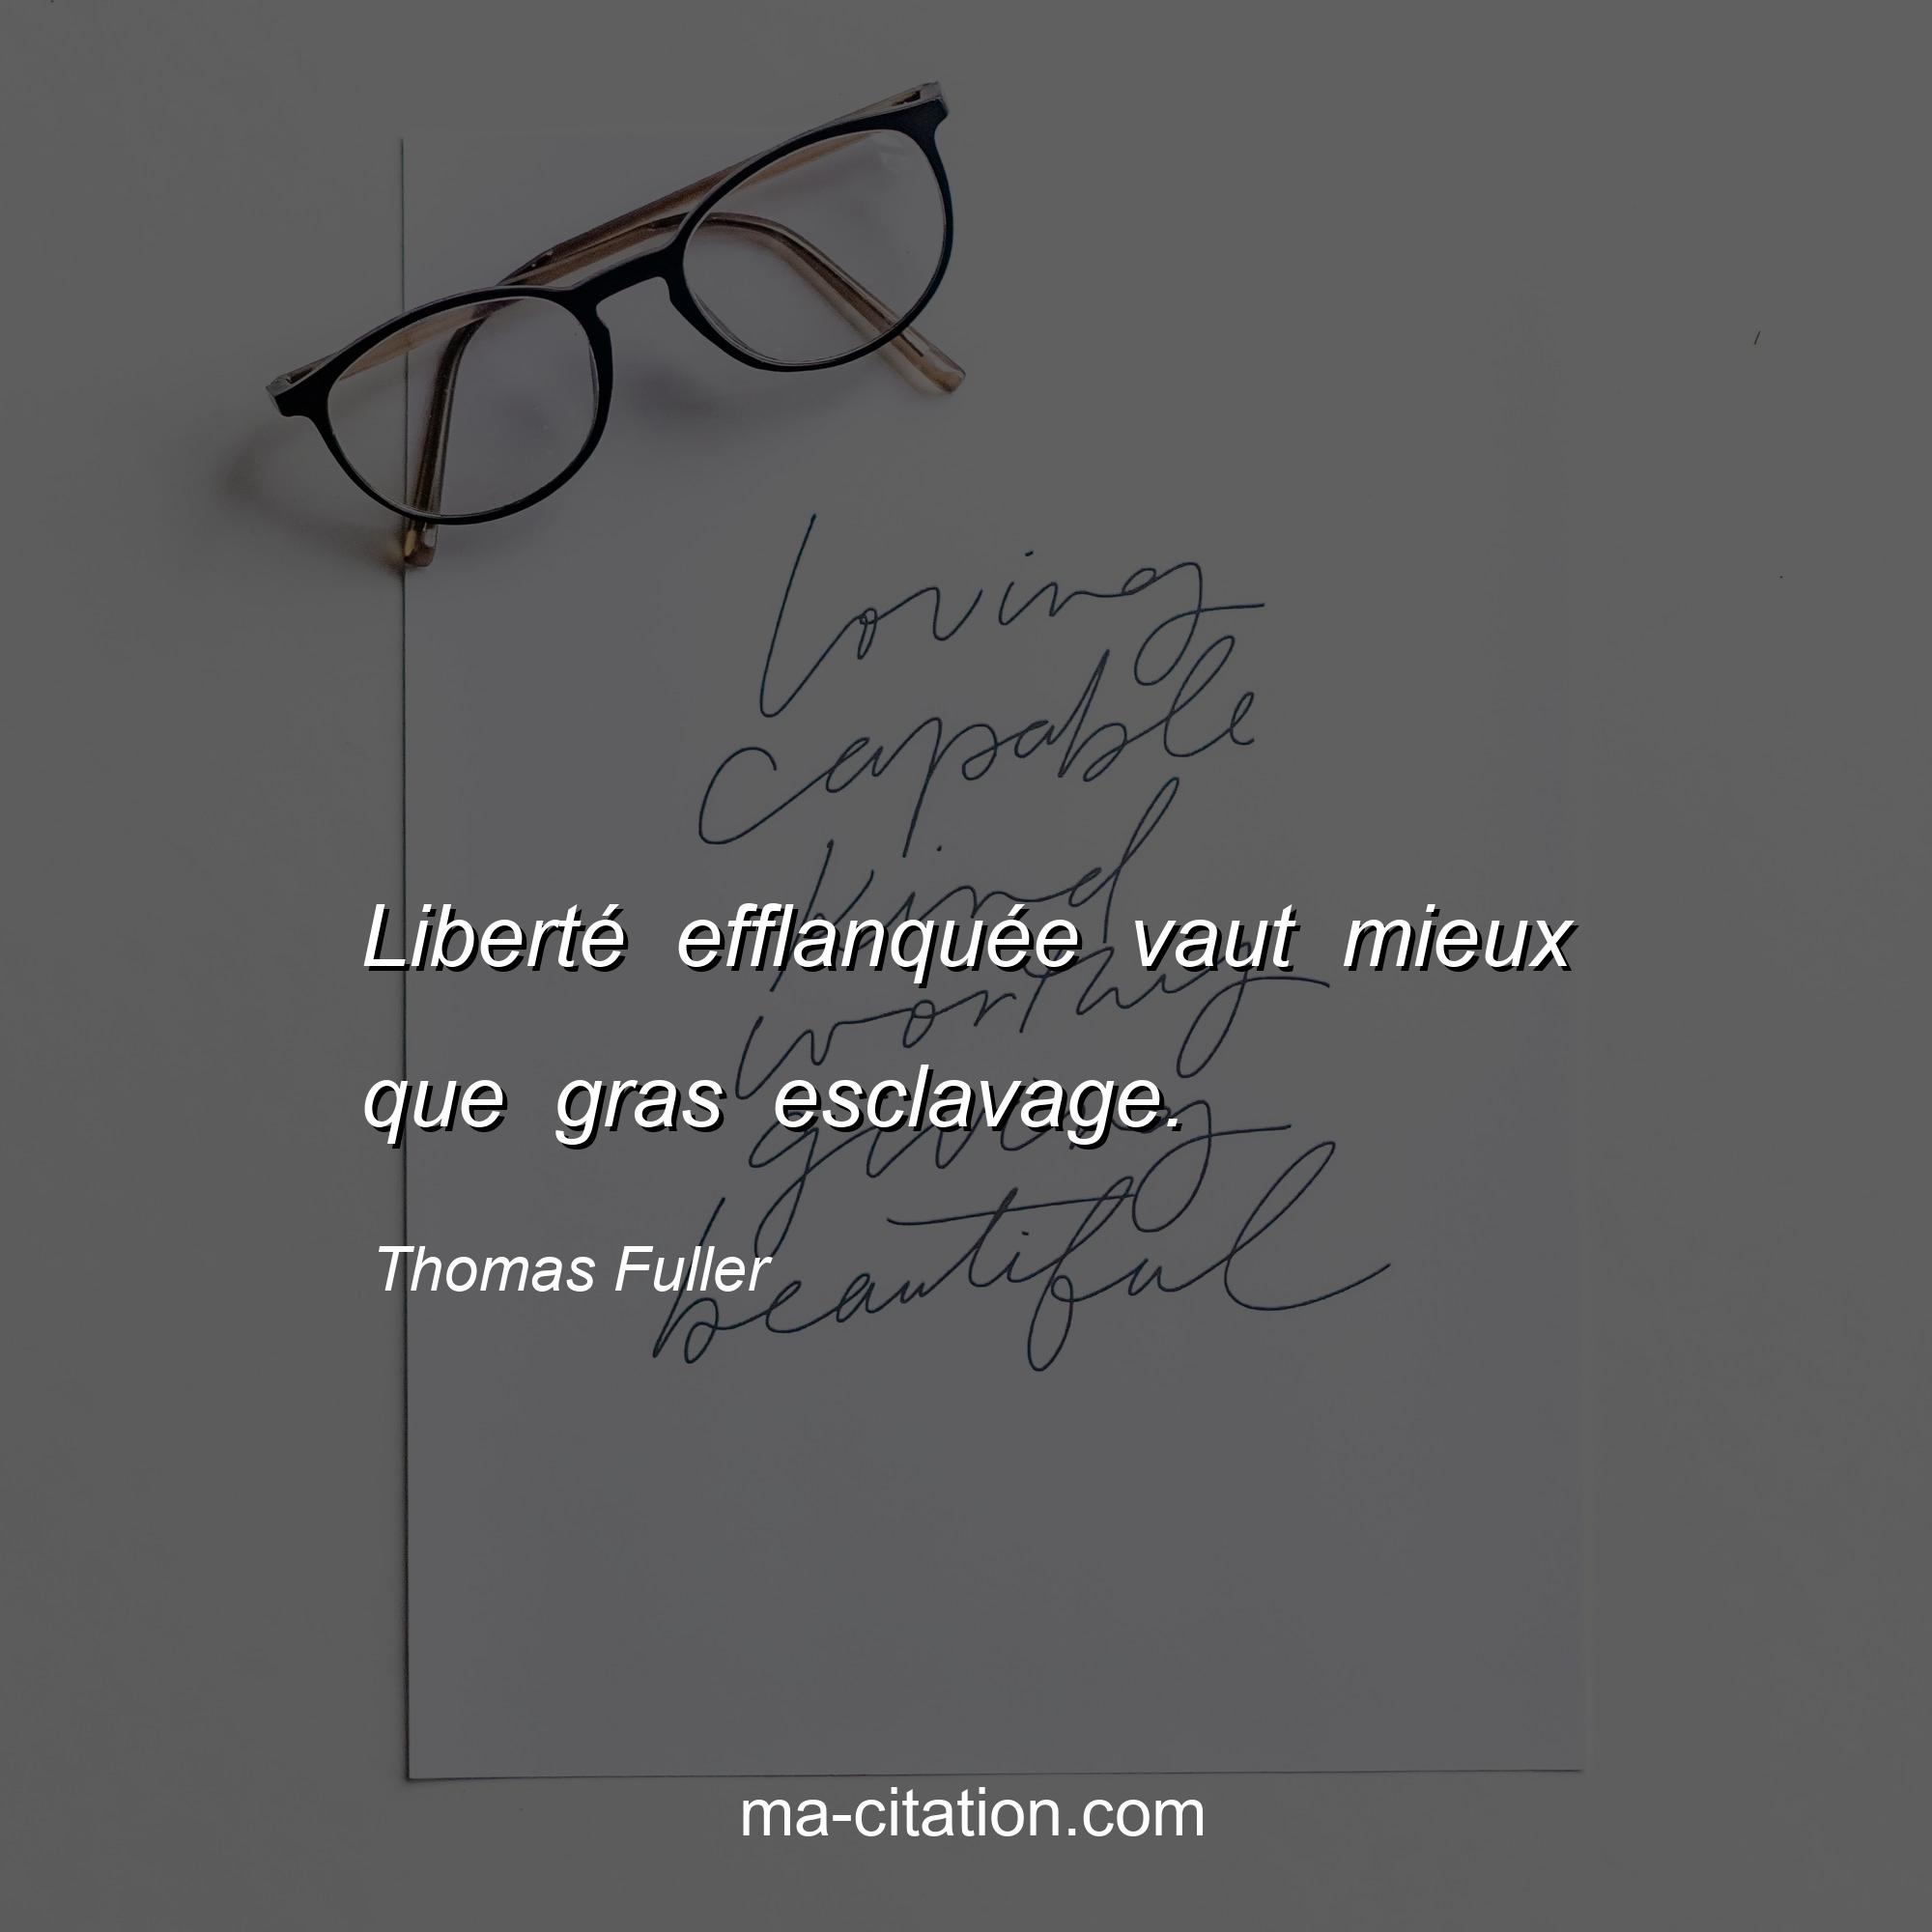 Thomas Fuller : Liberté efflanquée vaut mieux que gras esclavage.